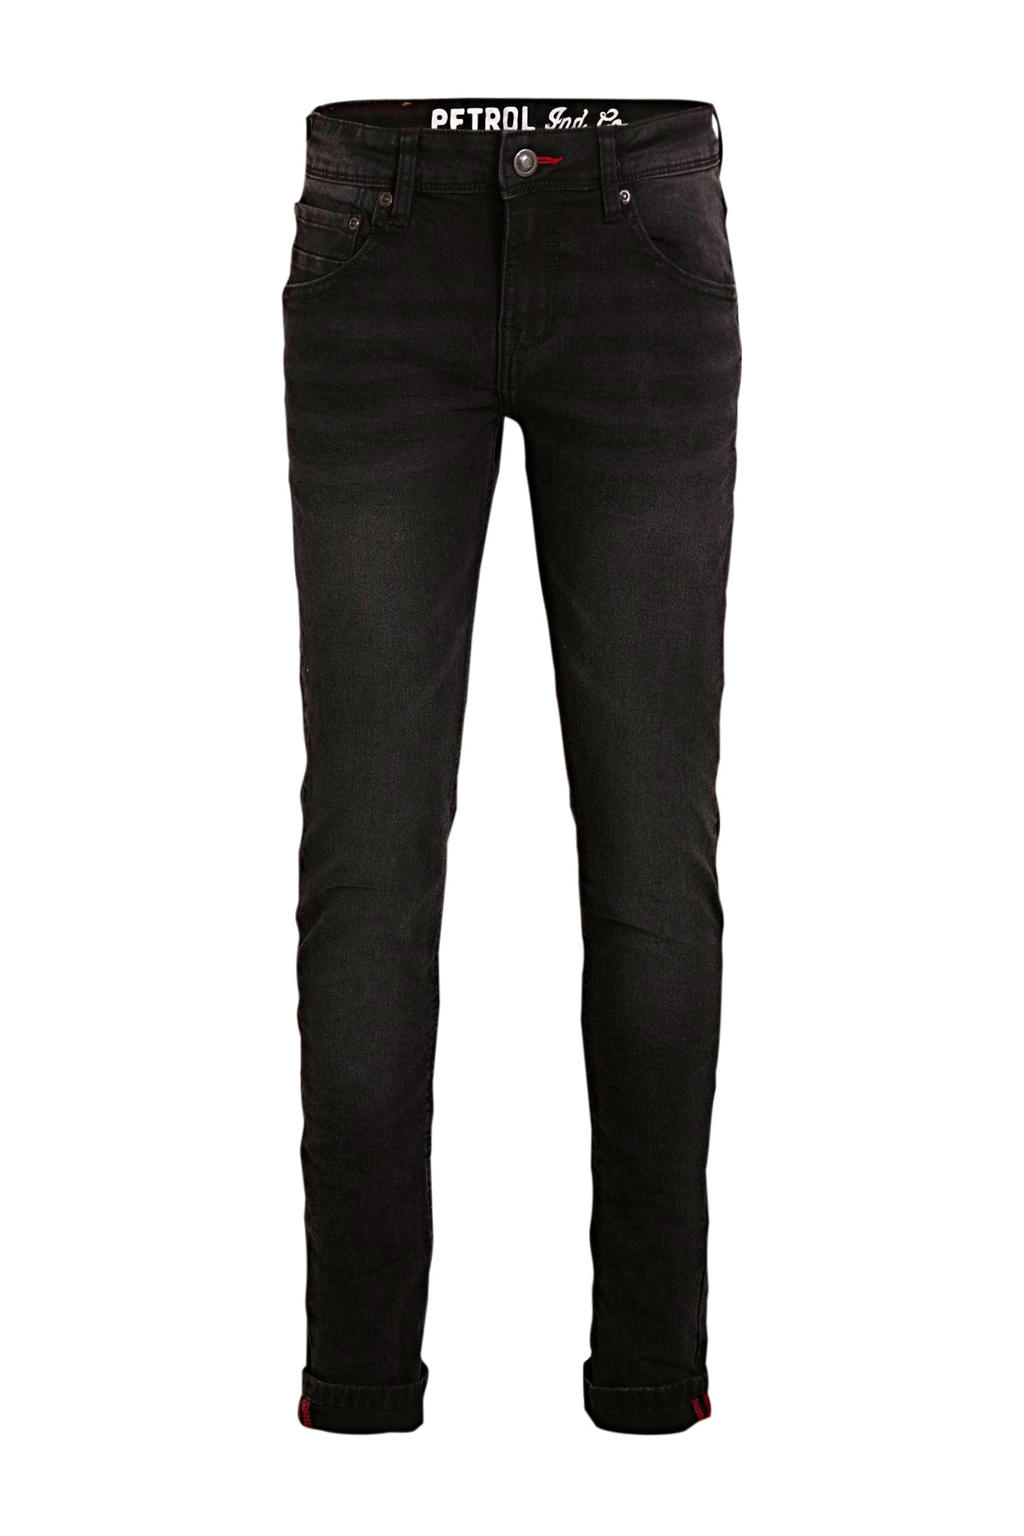 Zwarte jongens Petrol Industries skinny jeans van stretchdenim met regular waist en rits- en knoopsluiting